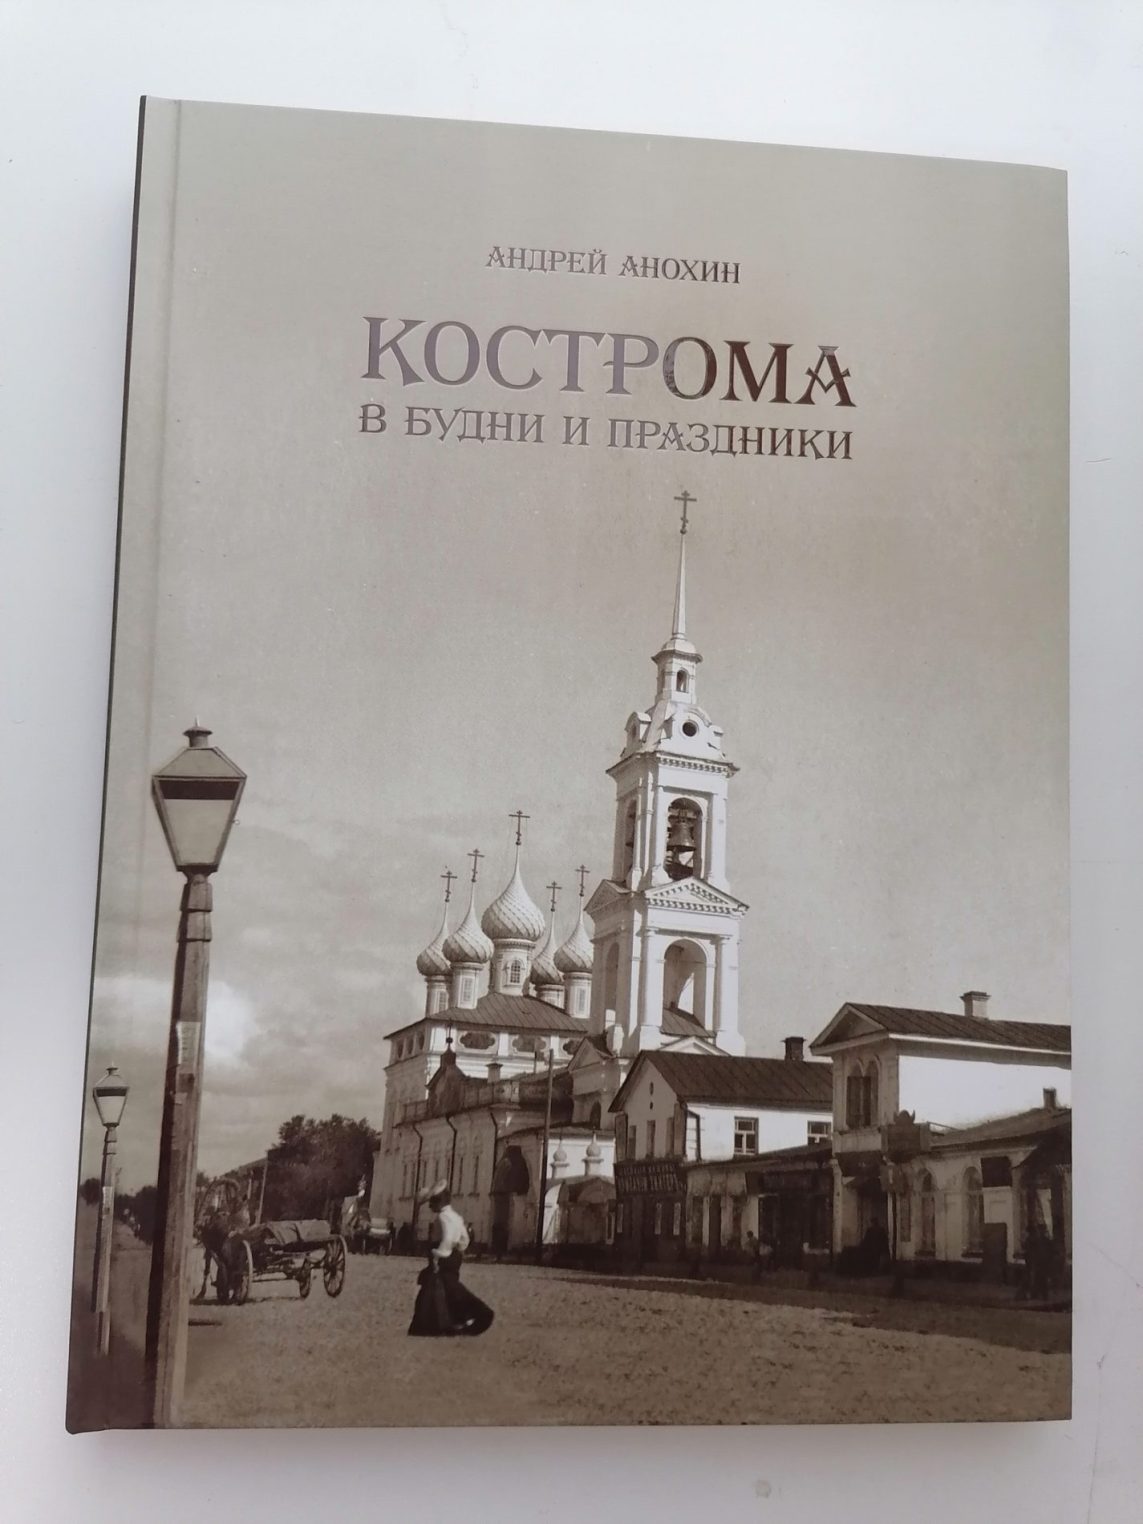 Тайны жизни дореволюционной Костромы раскрыты в книге Анохина